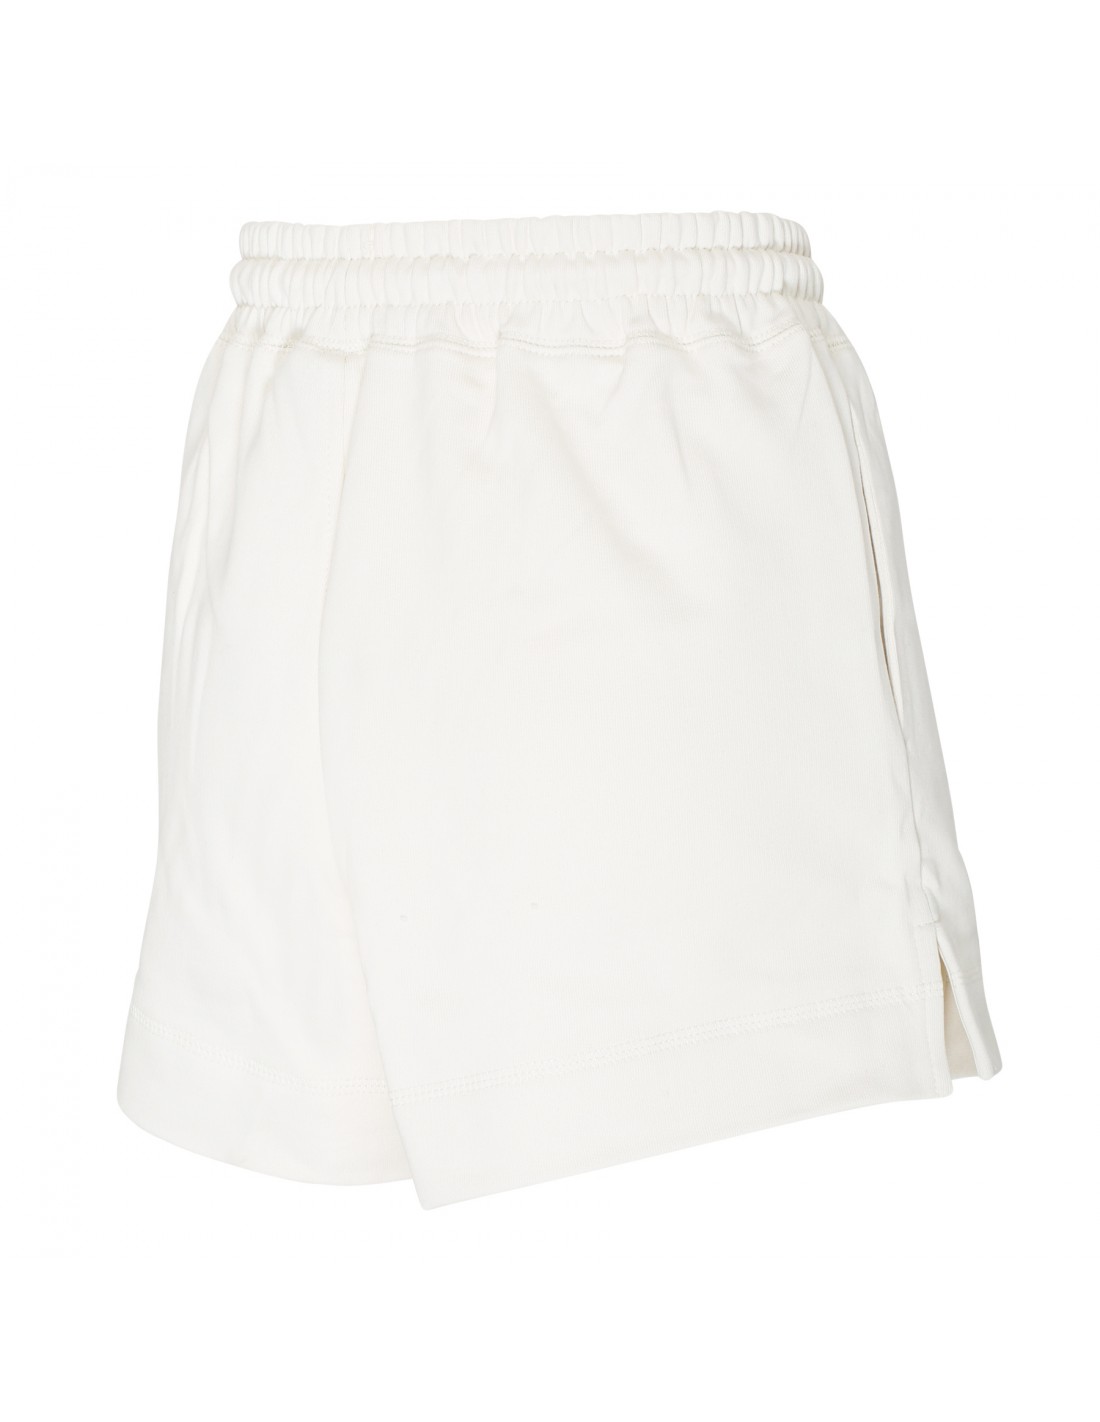 Egret cotton shorts